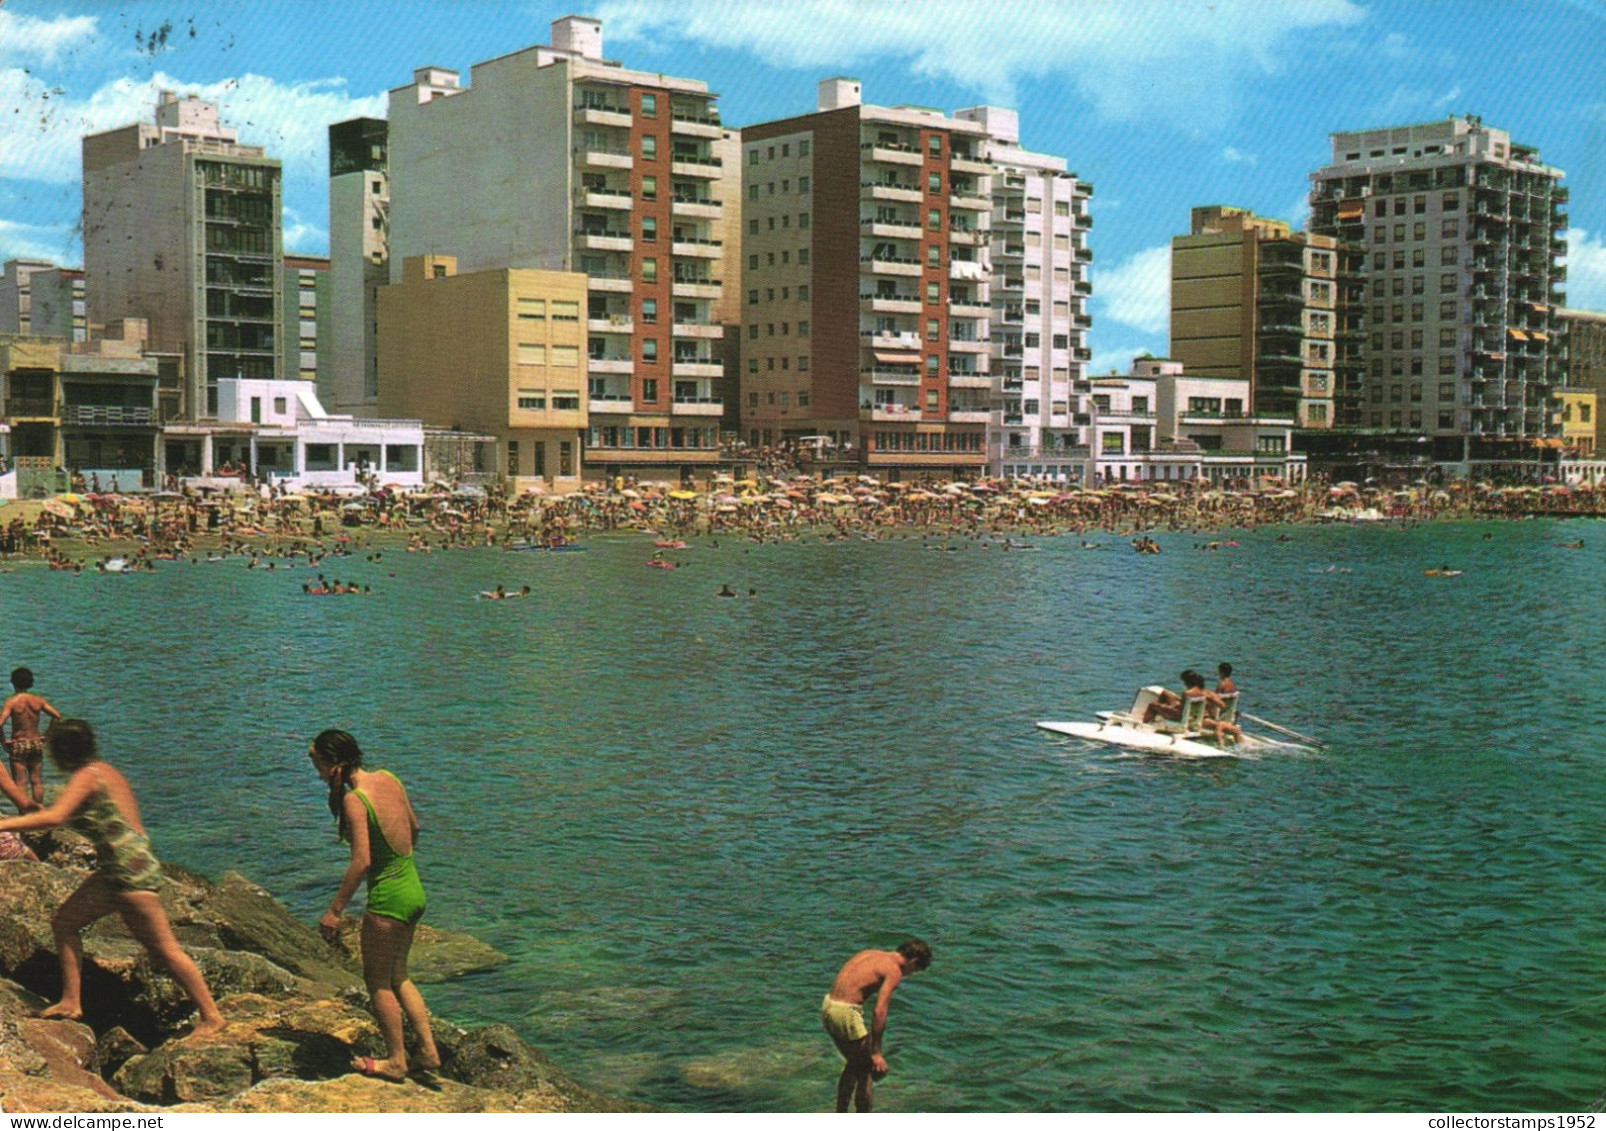 ALMERIA, BEACH, ARCHITECTURE, PEDALO, PEDAL BOAT, SPAIN - Almería